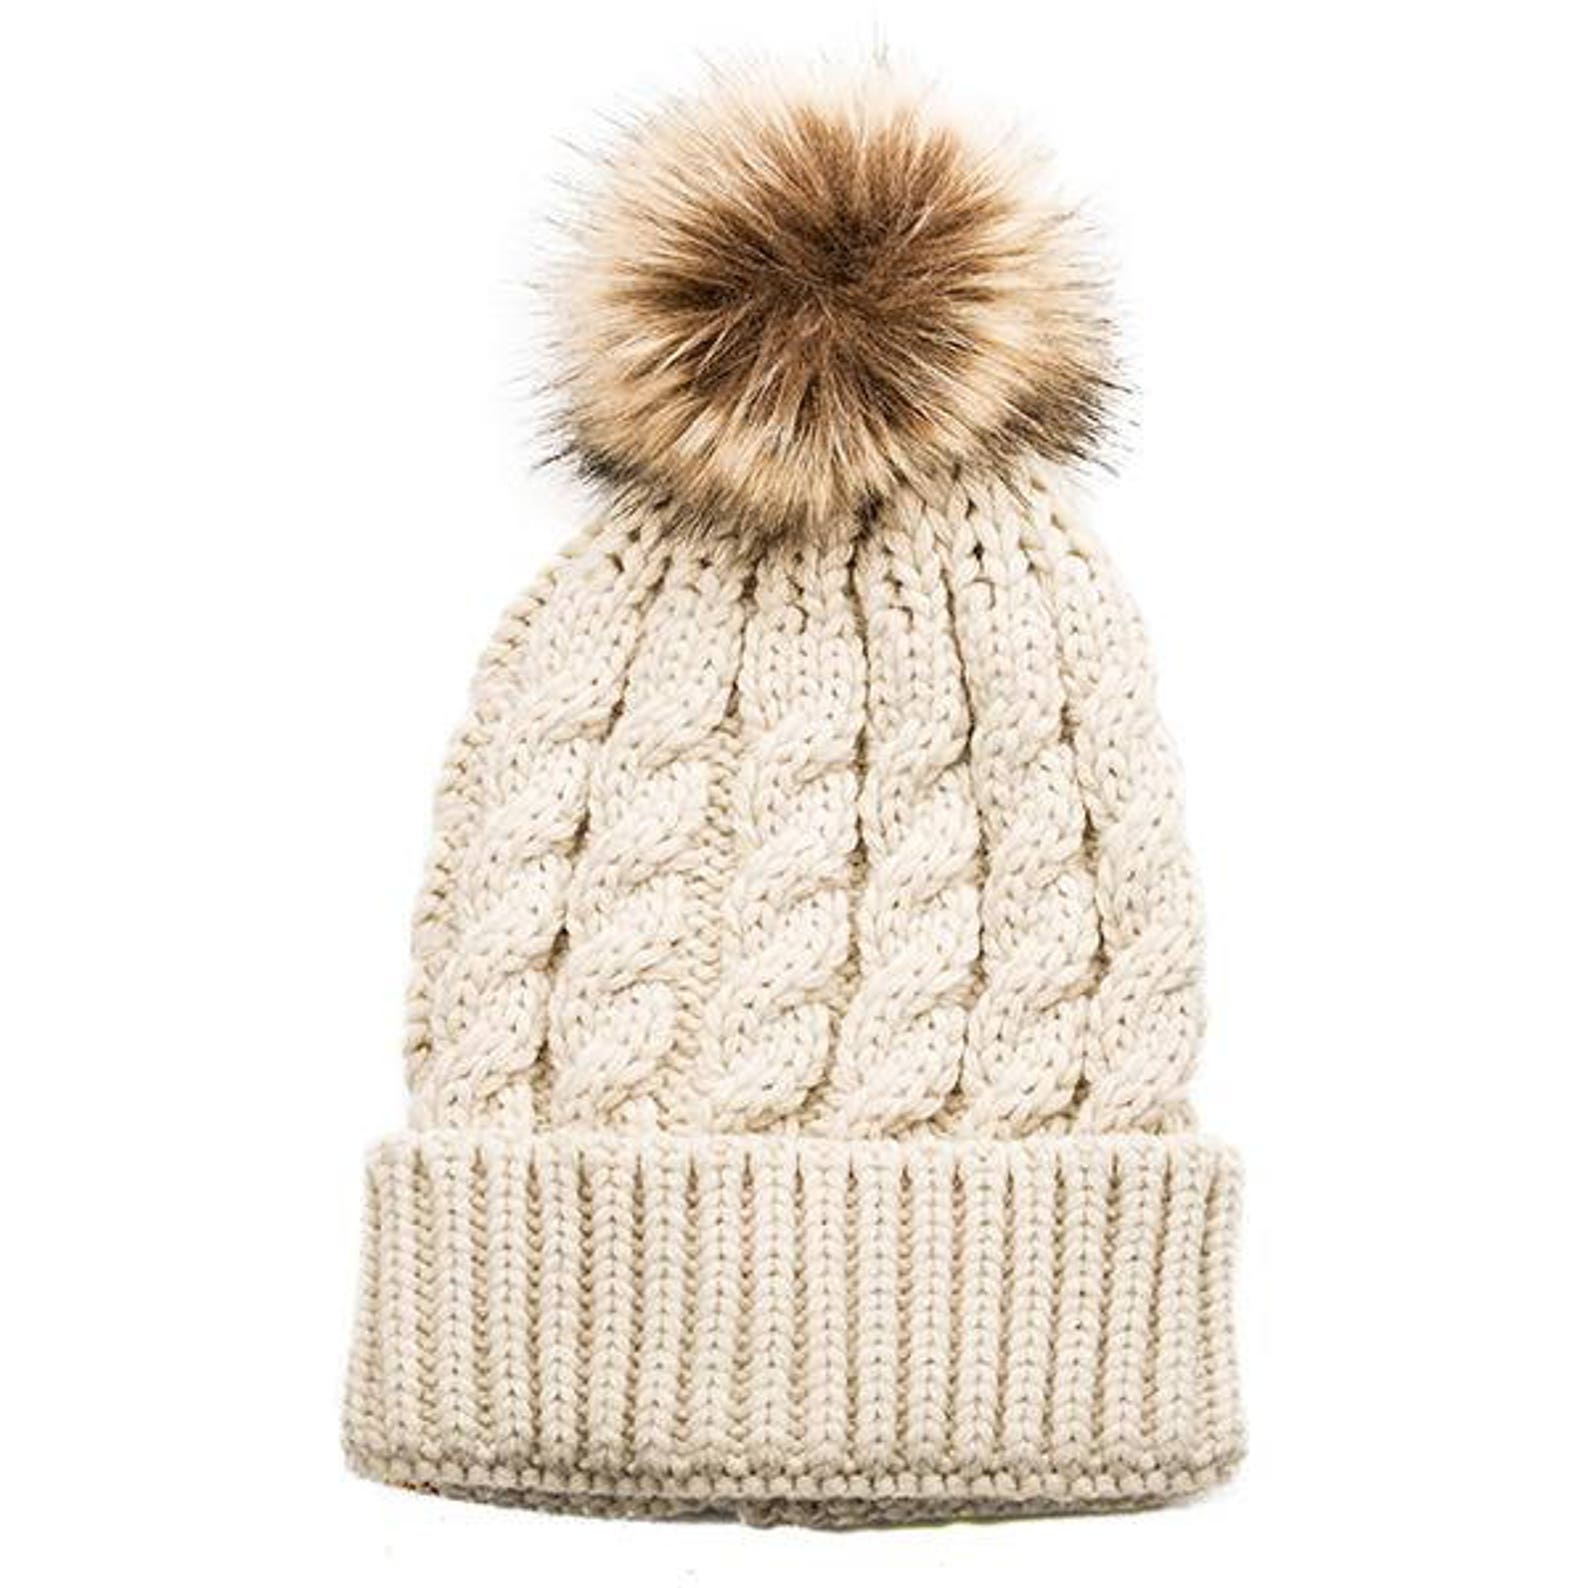 Monogram Knit Hat Pom Pom Winter hat toboggan Personalized | Etsy